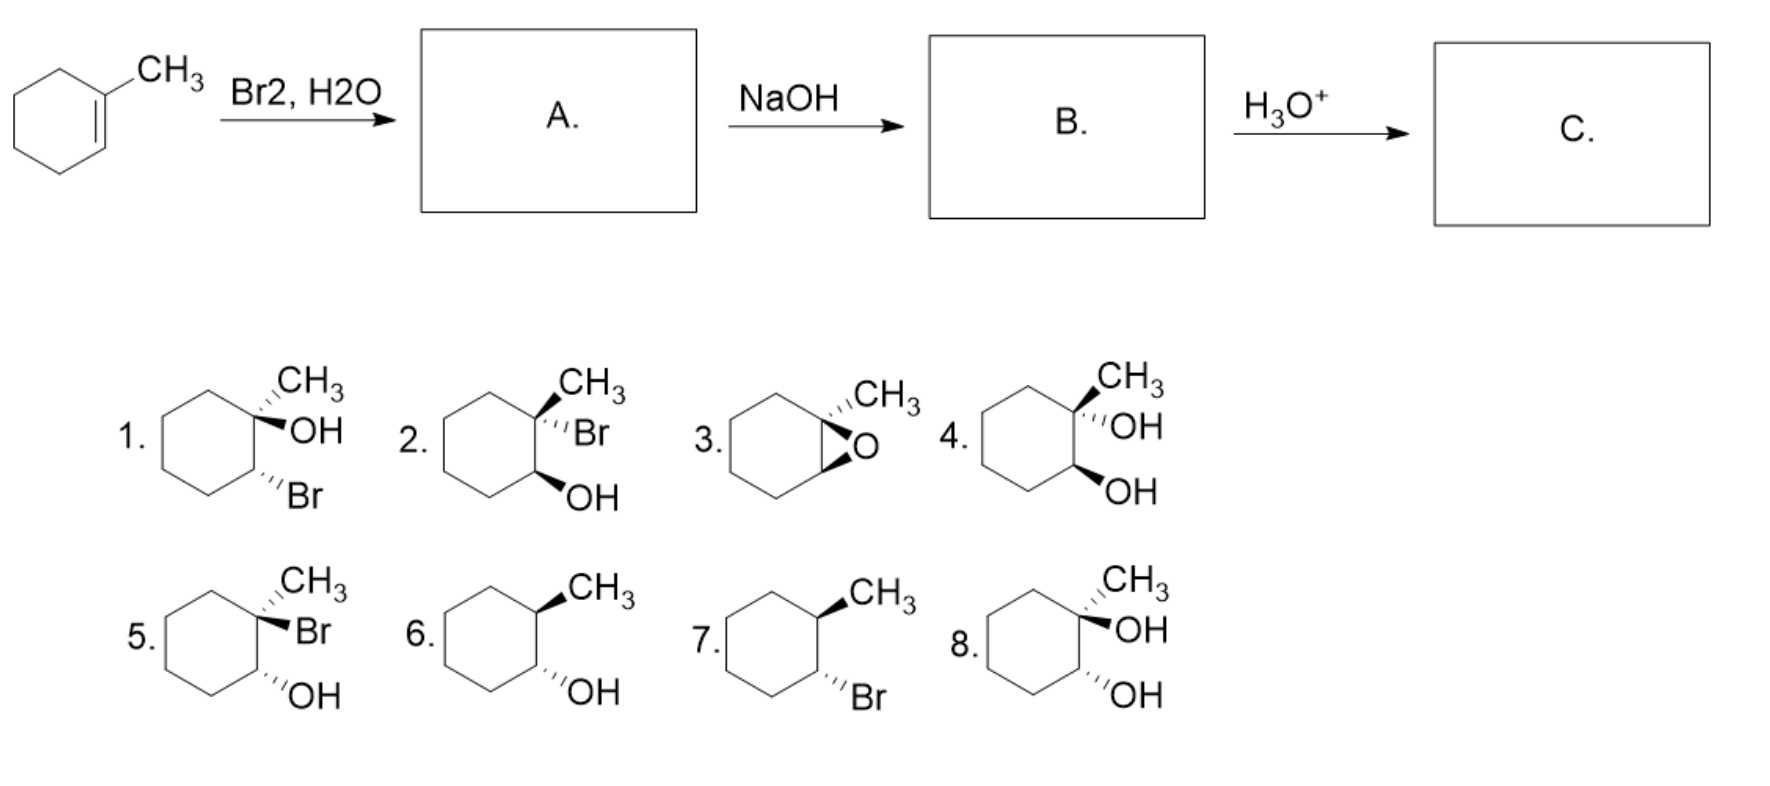 Циклогексан +2br2. Бензол ch3cl. Сн2 br ch3 +h2o. Бензол + н2. C2h2 бензол